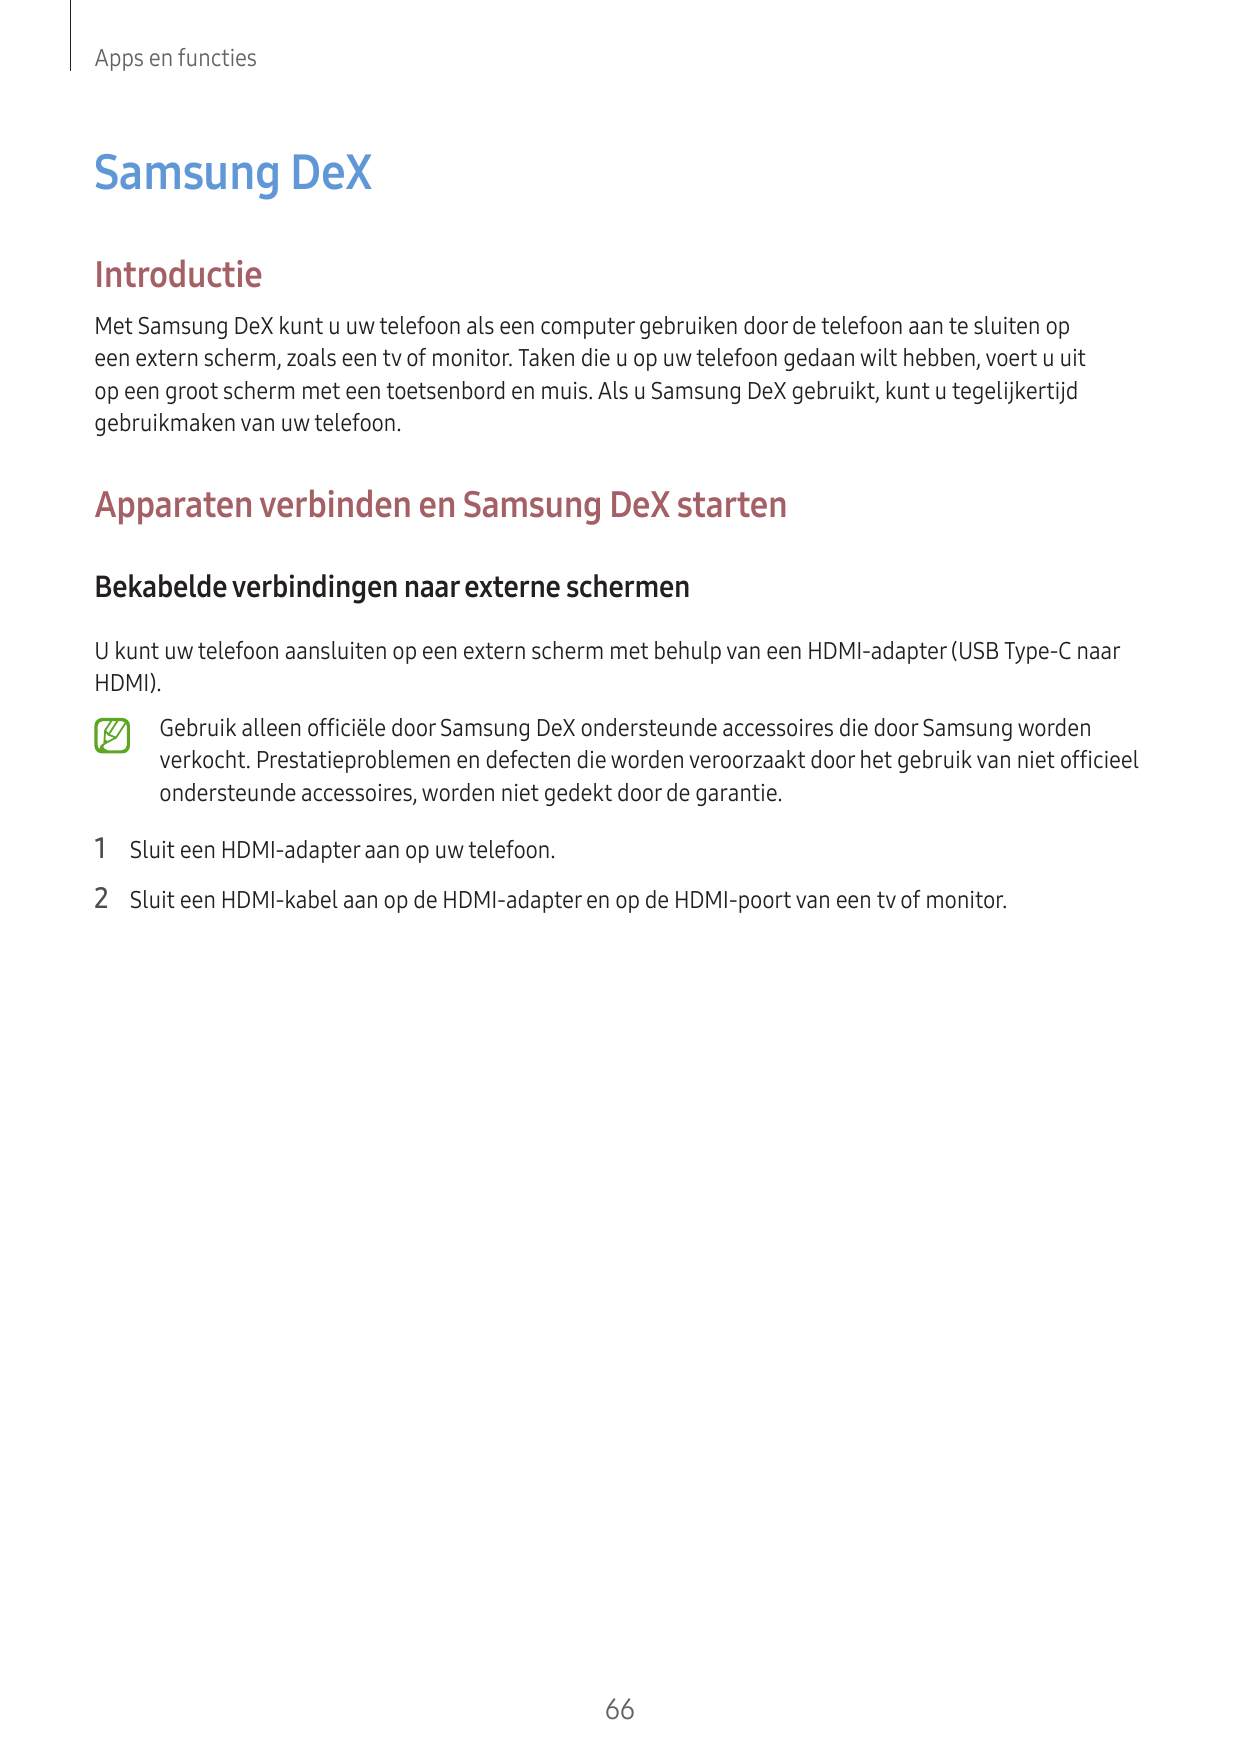 Apps en functiesSamsung DeXIntroductieMet Samsung DeX kunt u uw telefoon als een computer gebruiken door de telefoon aan te slui